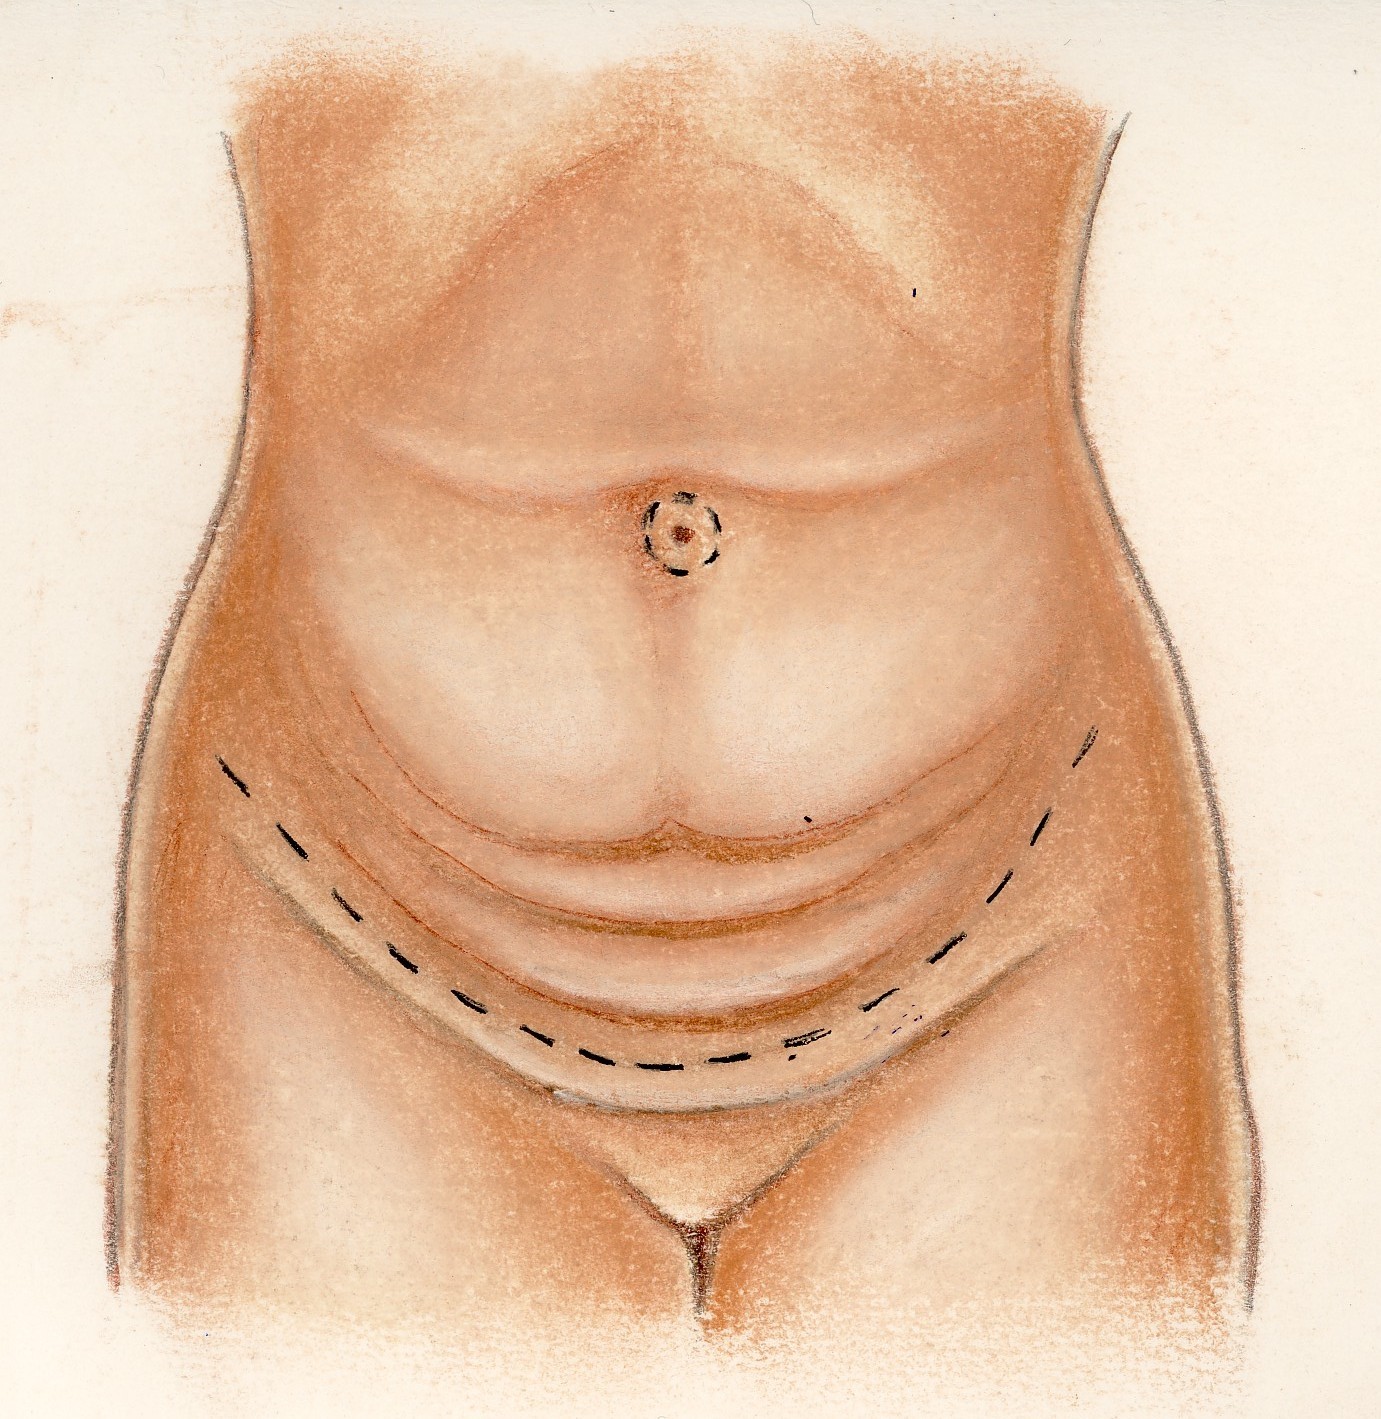 Plastie abdominale - Tarif et infos Abdominoplastie à Paris